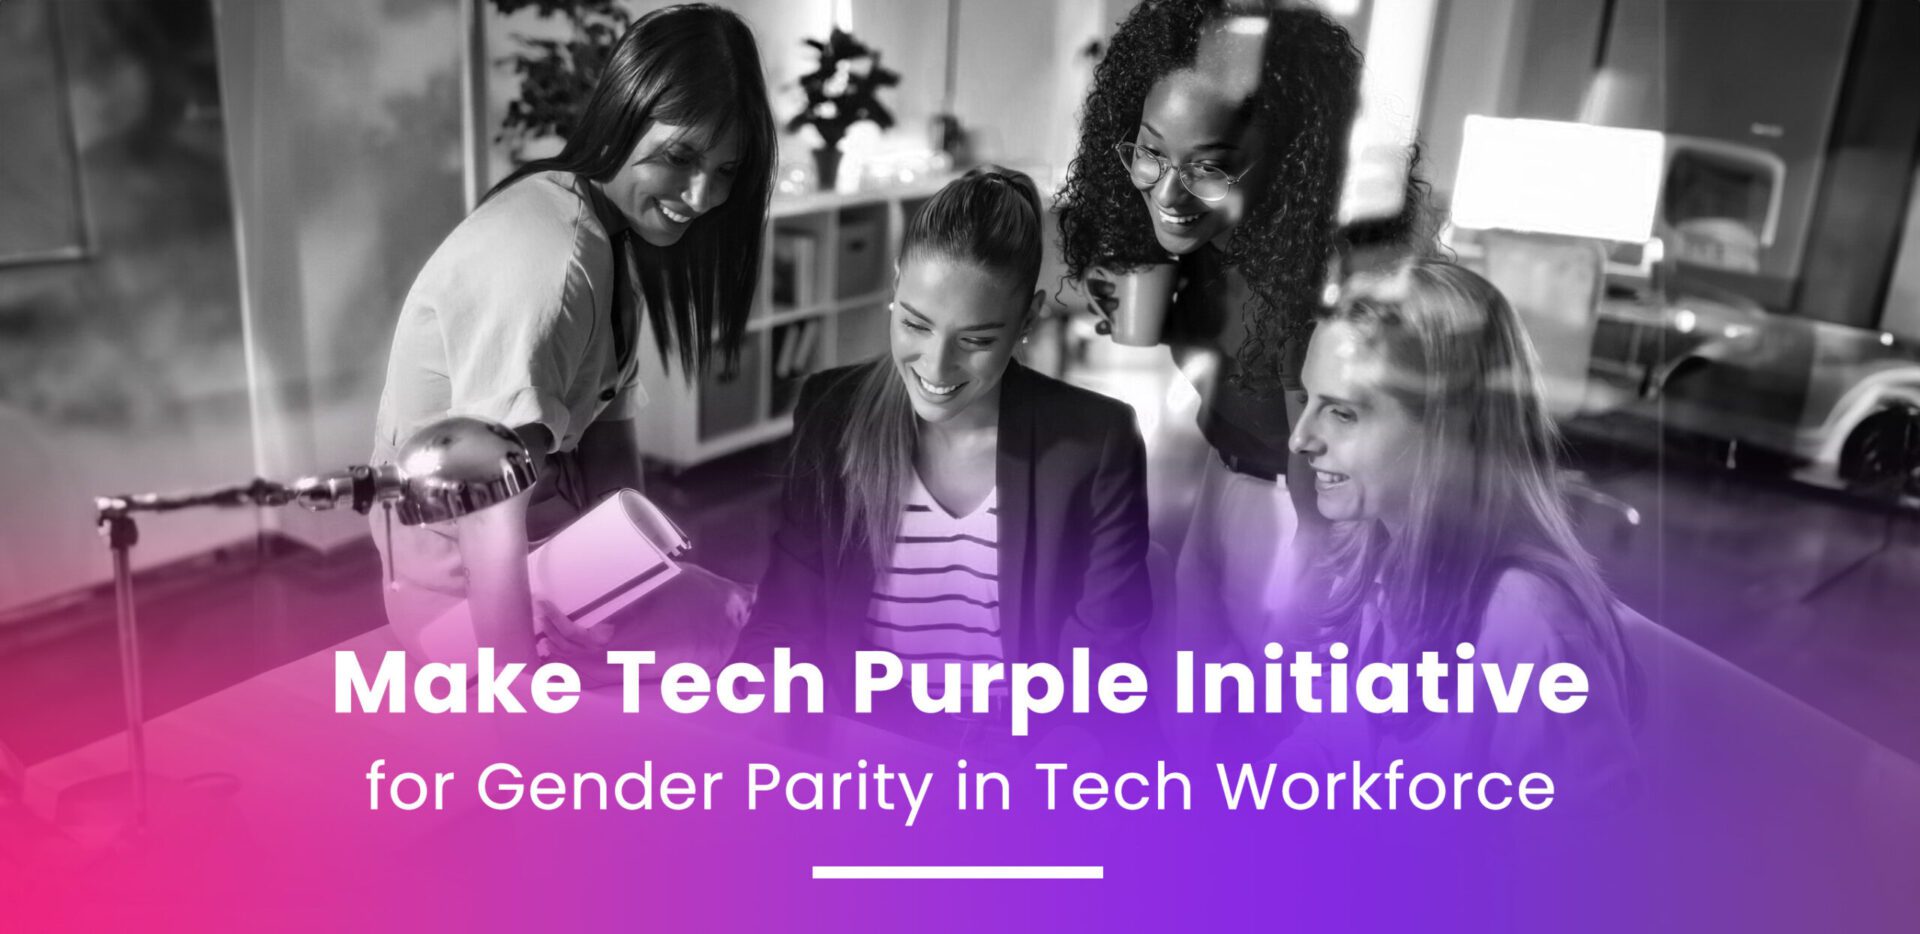 Make Tech Purple Initiative for Gender Parity in Tech Workforce